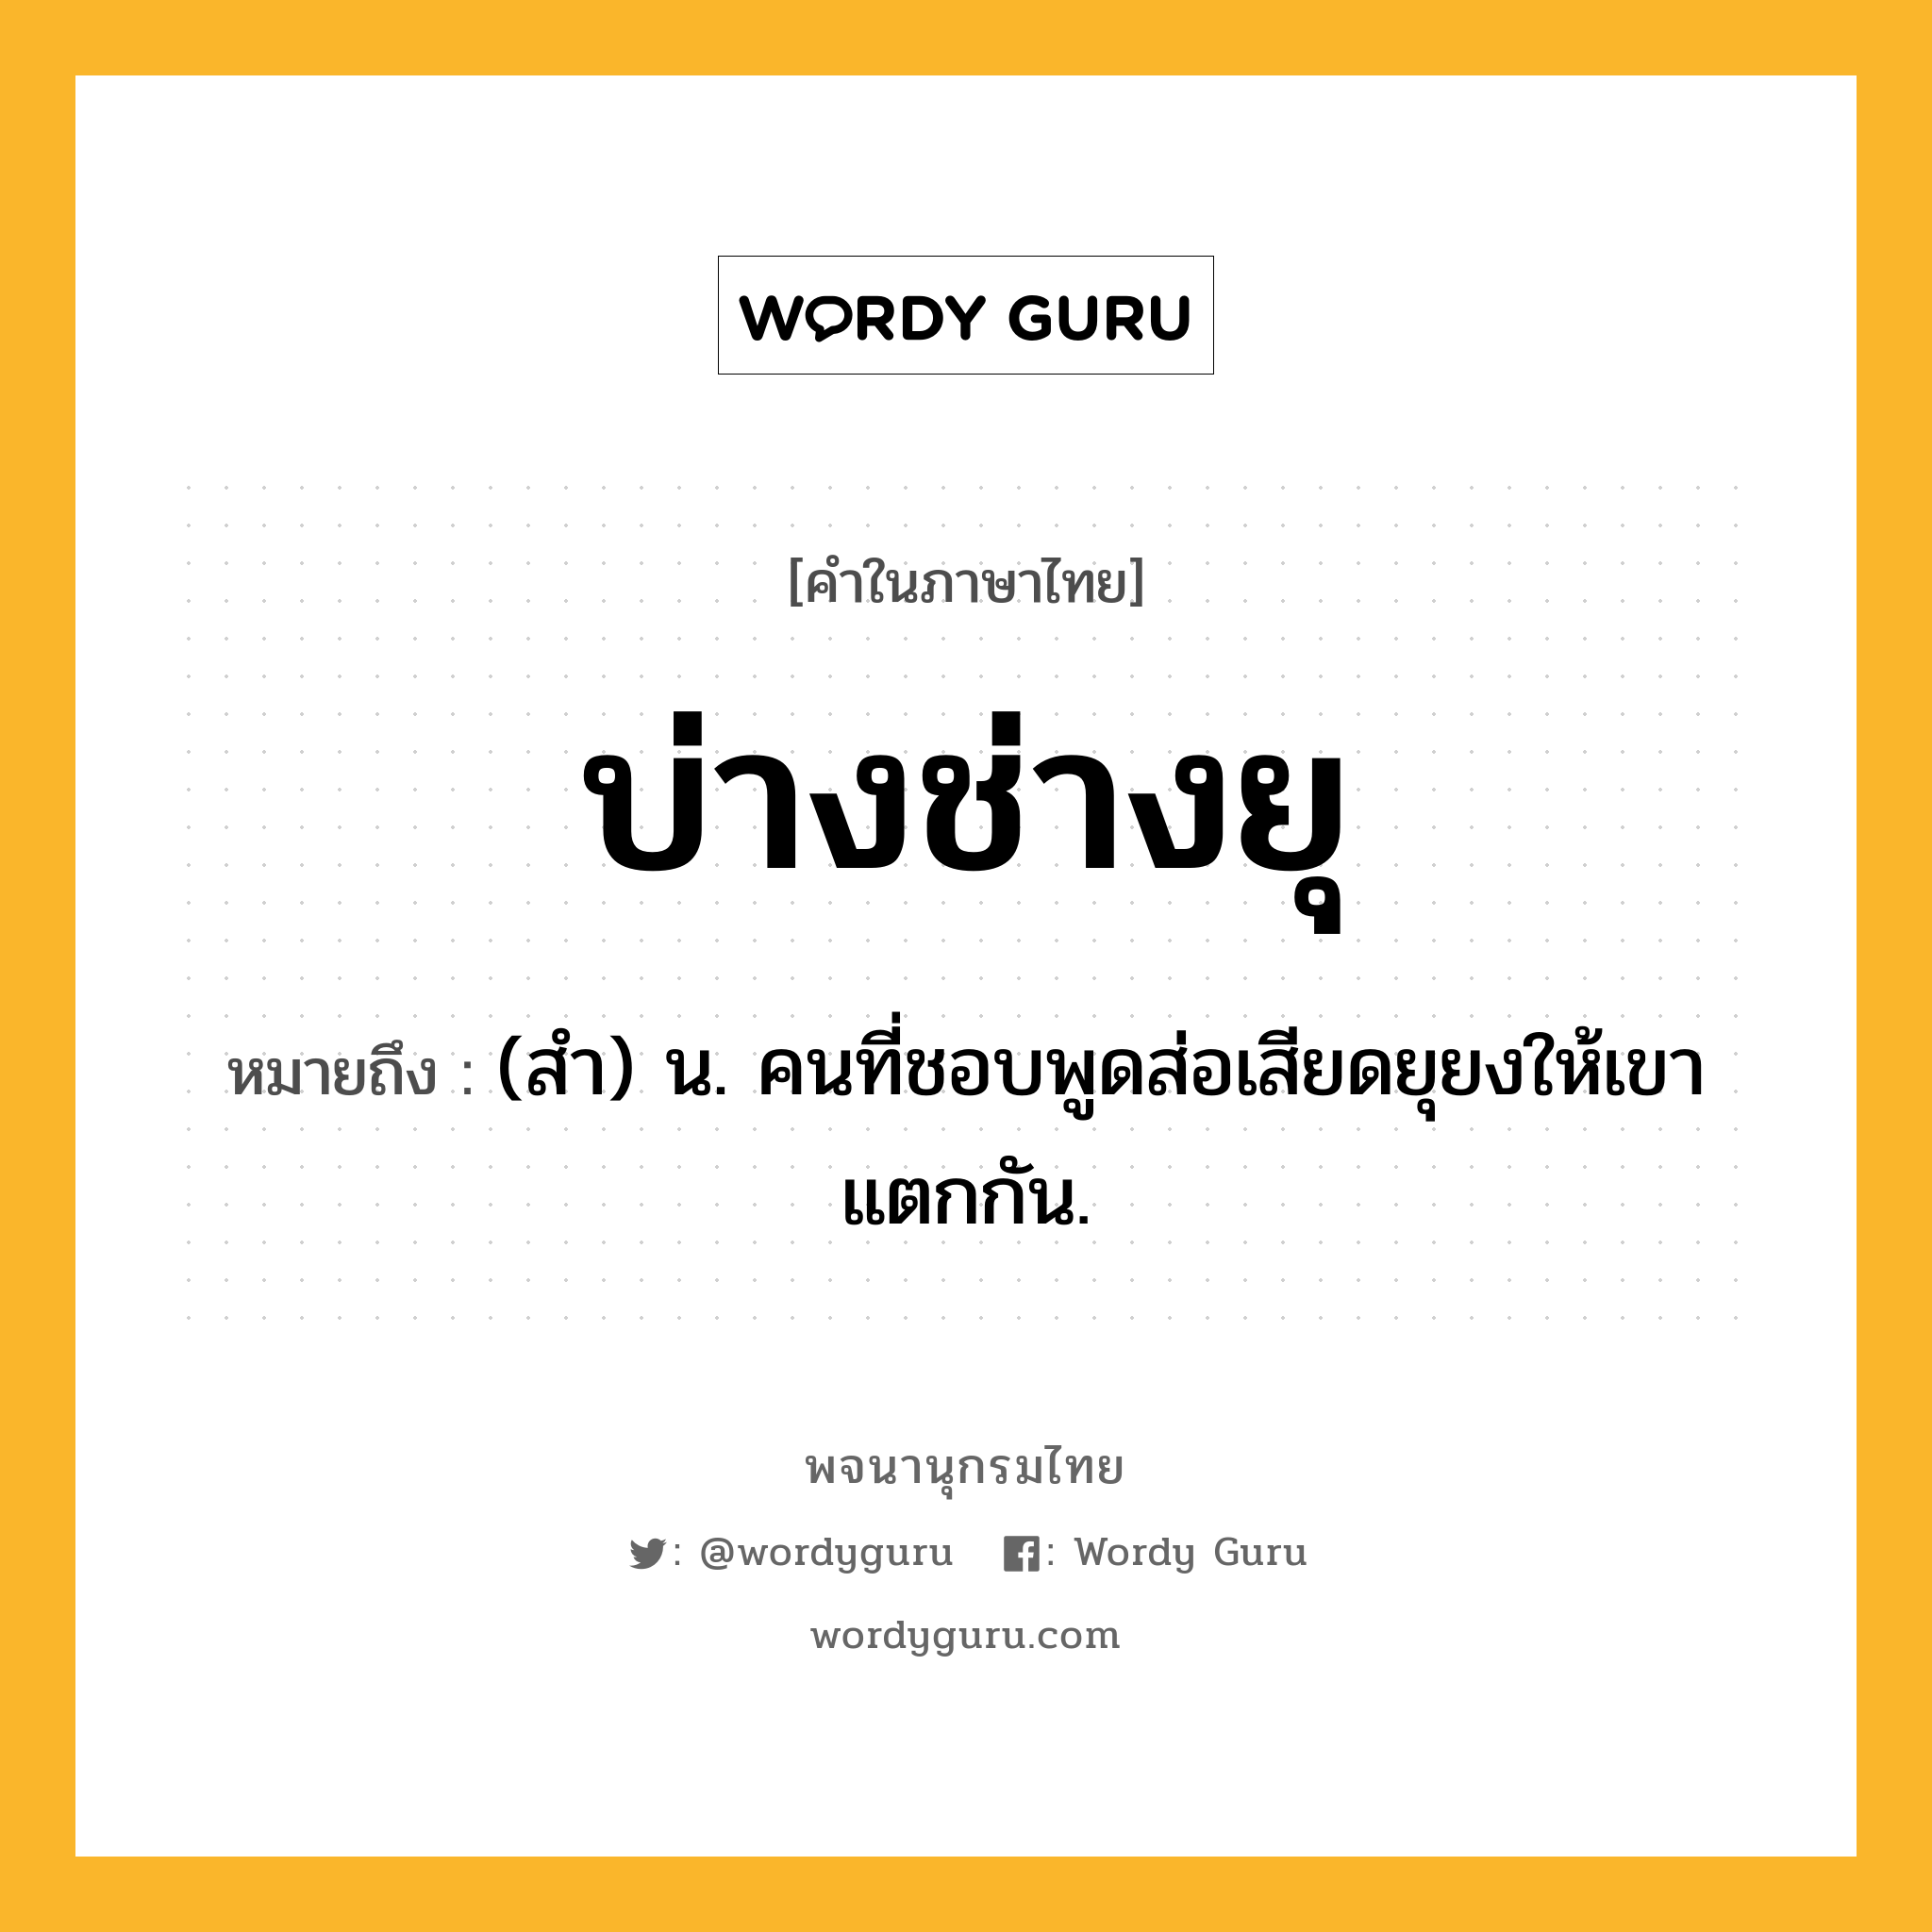 บ่างช่างยุ หมายถึงอะไร?, คำในภาษาไทย บ่างช่างยุ หมายถึง (สํา) น. คนที่ชอบพูดส่อเสียดยุยงให้เขาแตกกัน.